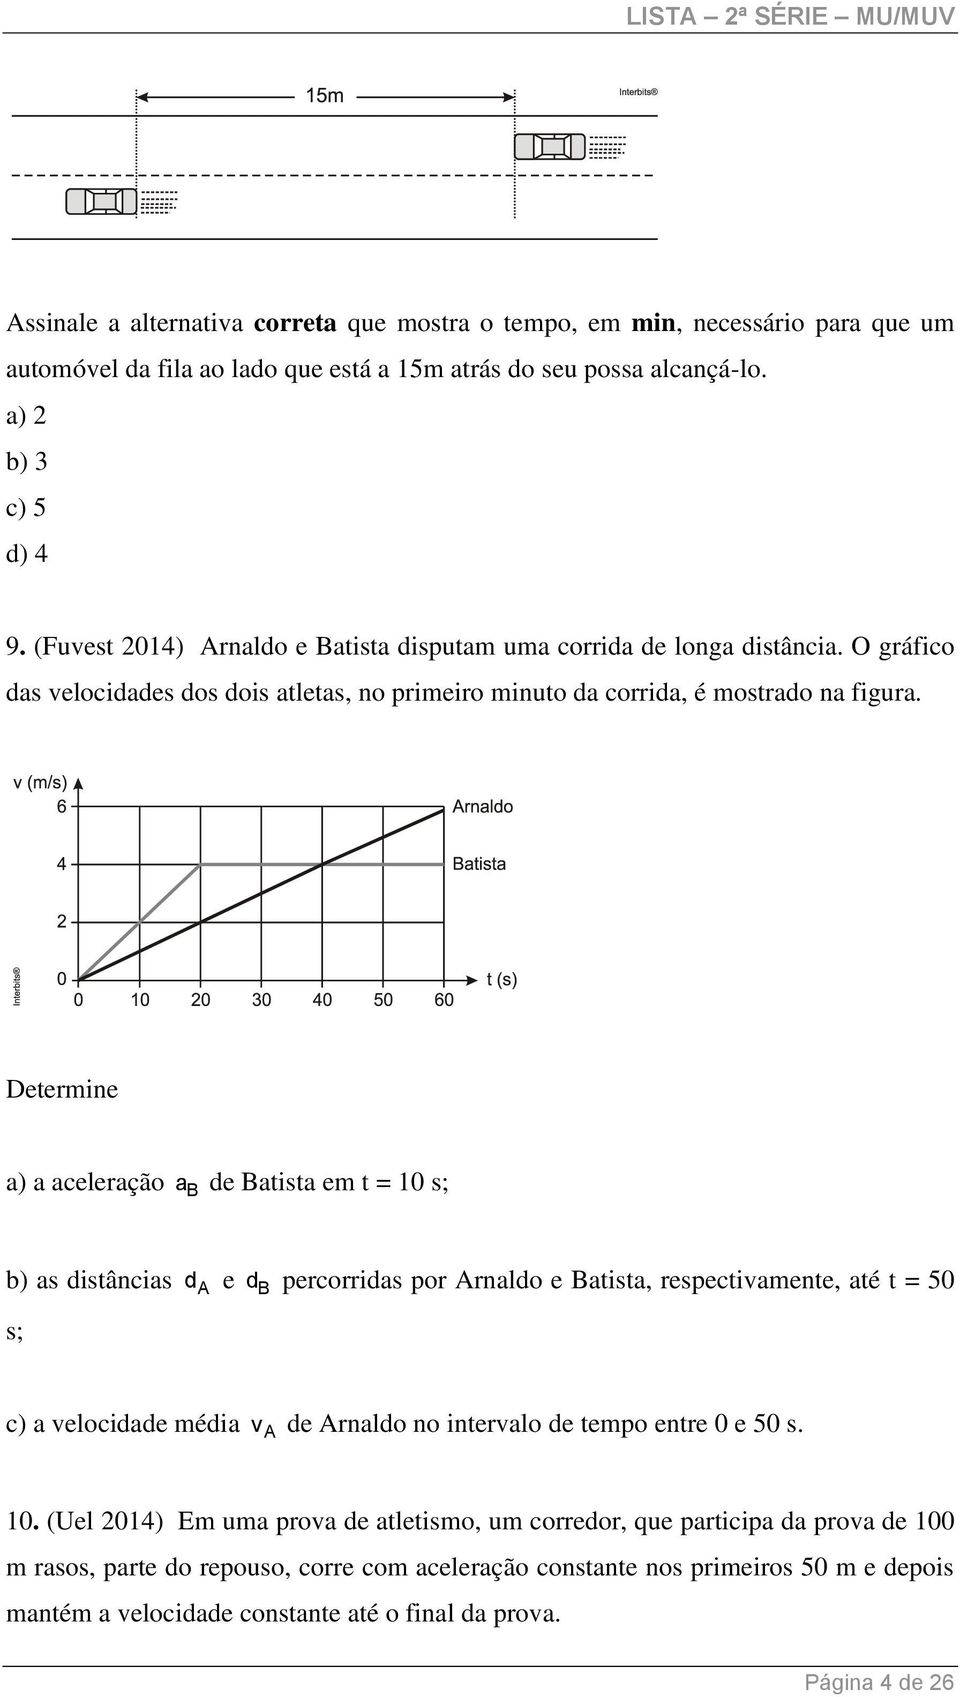 Determine a) a aceleração a B de Batista em t = 10 s; b) as distâncias d A e d B percorridas por Arnaldo e Batista, respectivamente, até t = 50 s; c) a velocidade média v A de Arnaldo no intervalo de